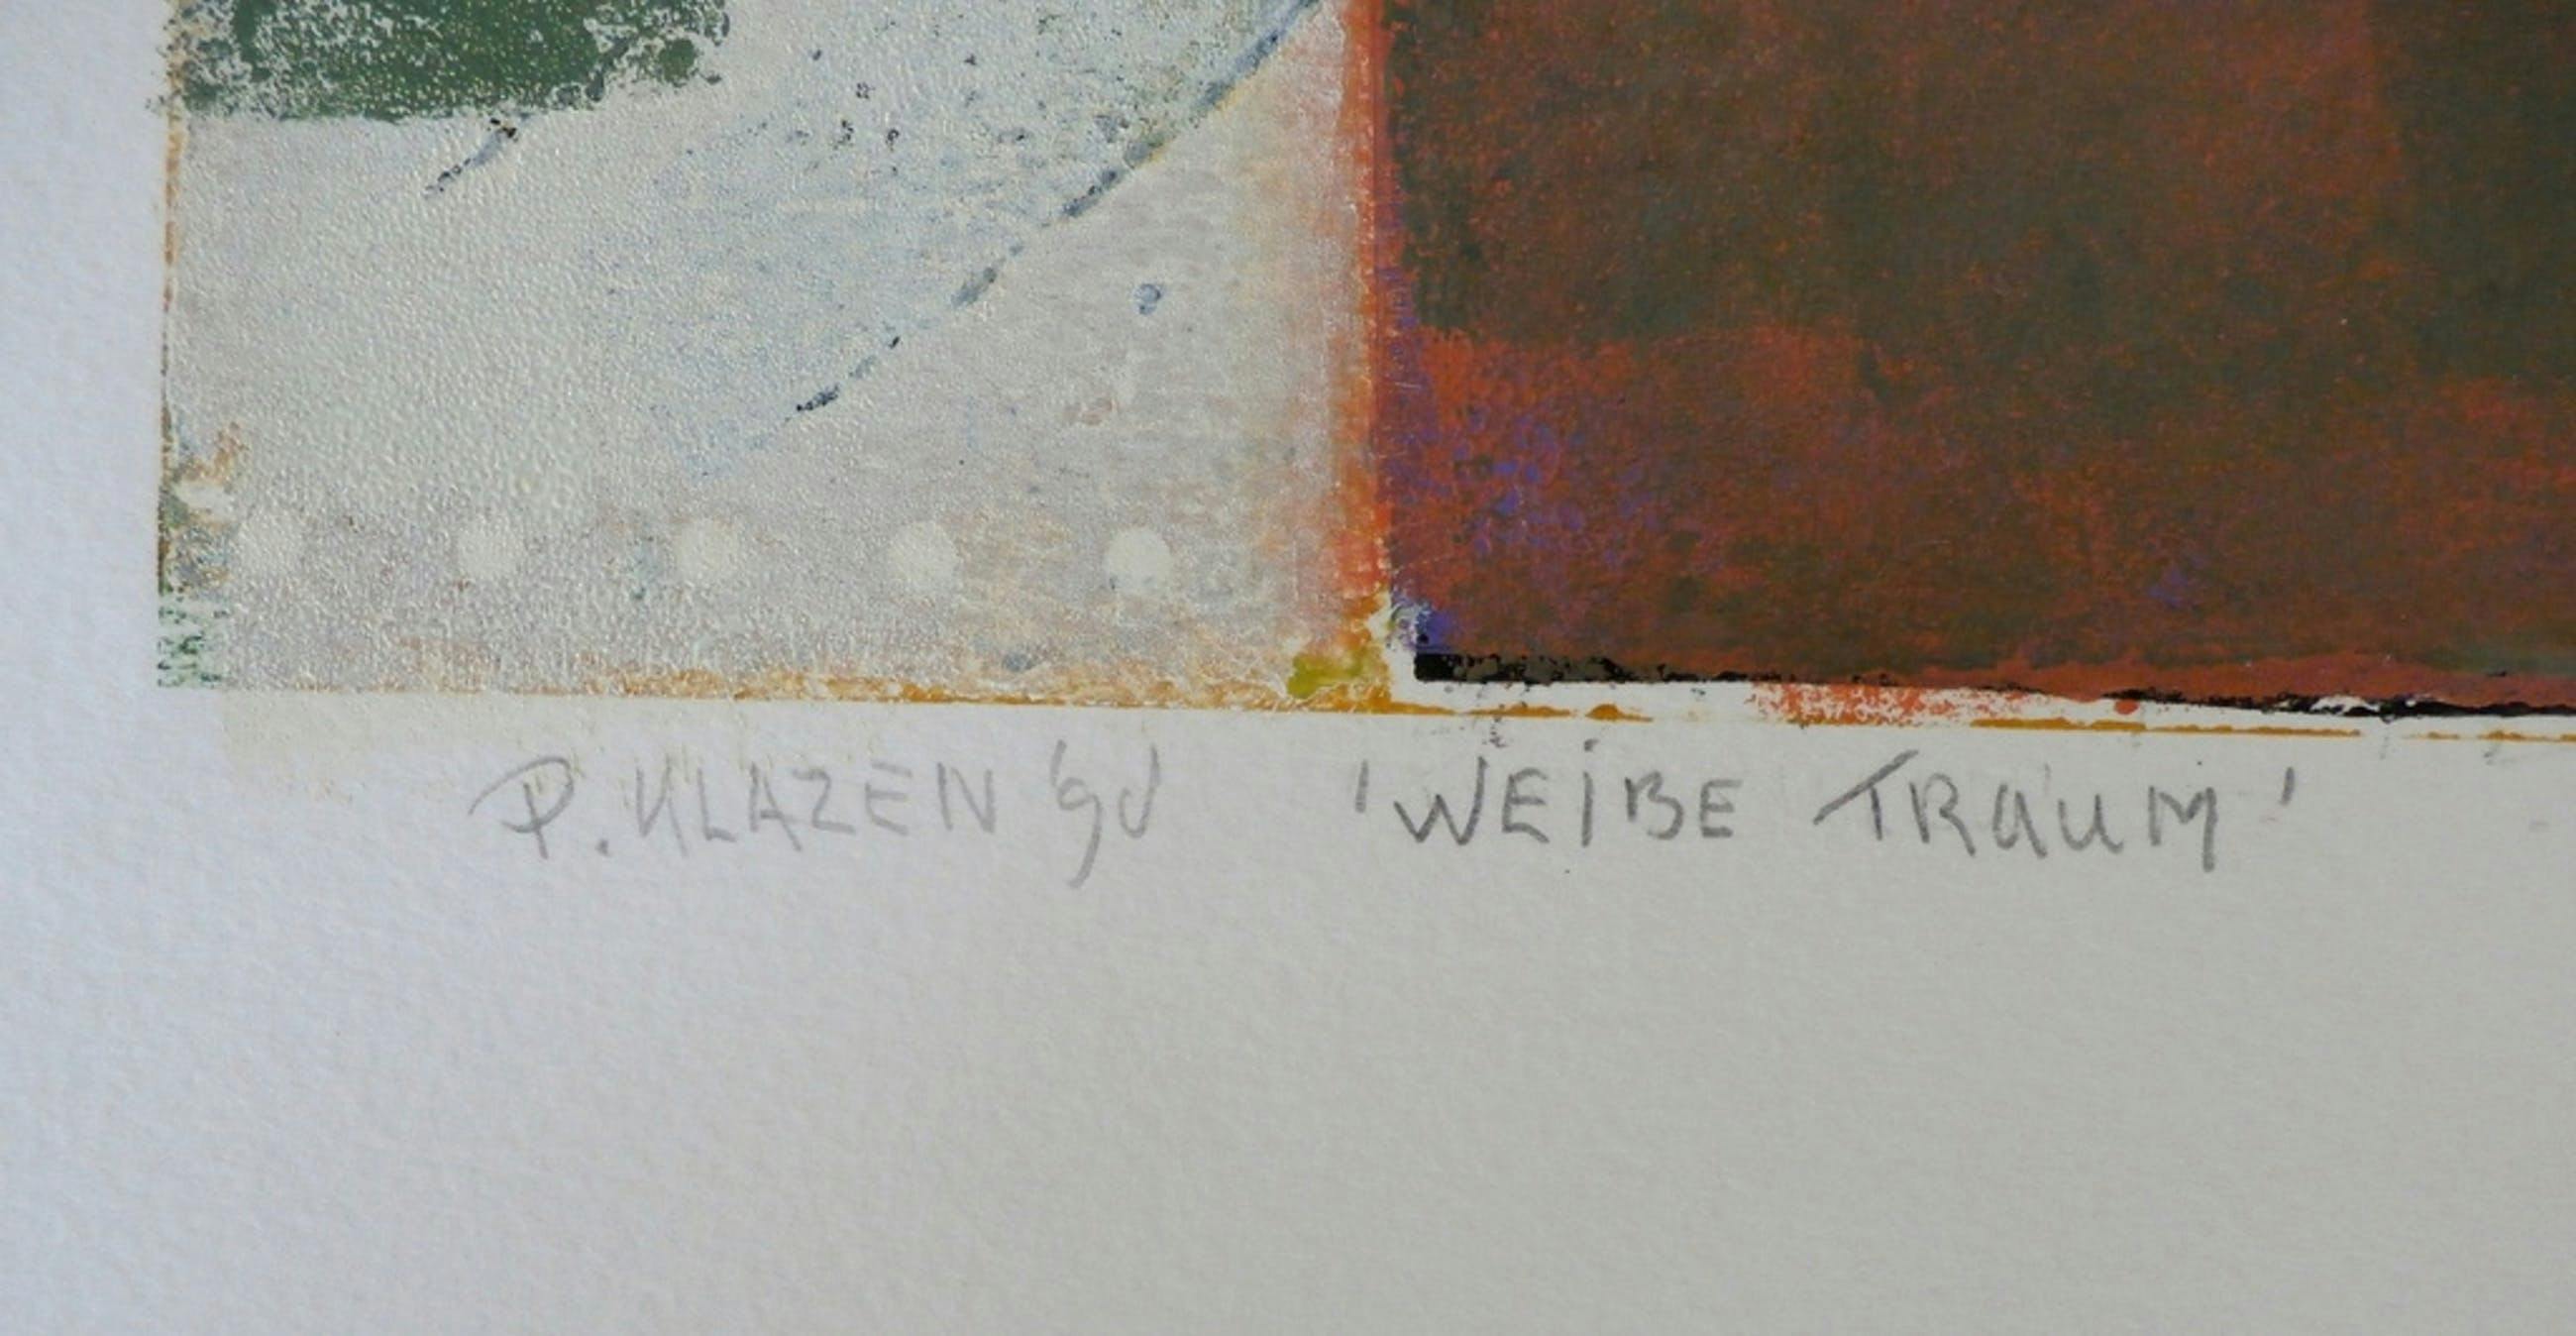 Pieter Klazen - grote acryl op papier: Weisse Traum - 1998 kopen? Bied vanaf 110!